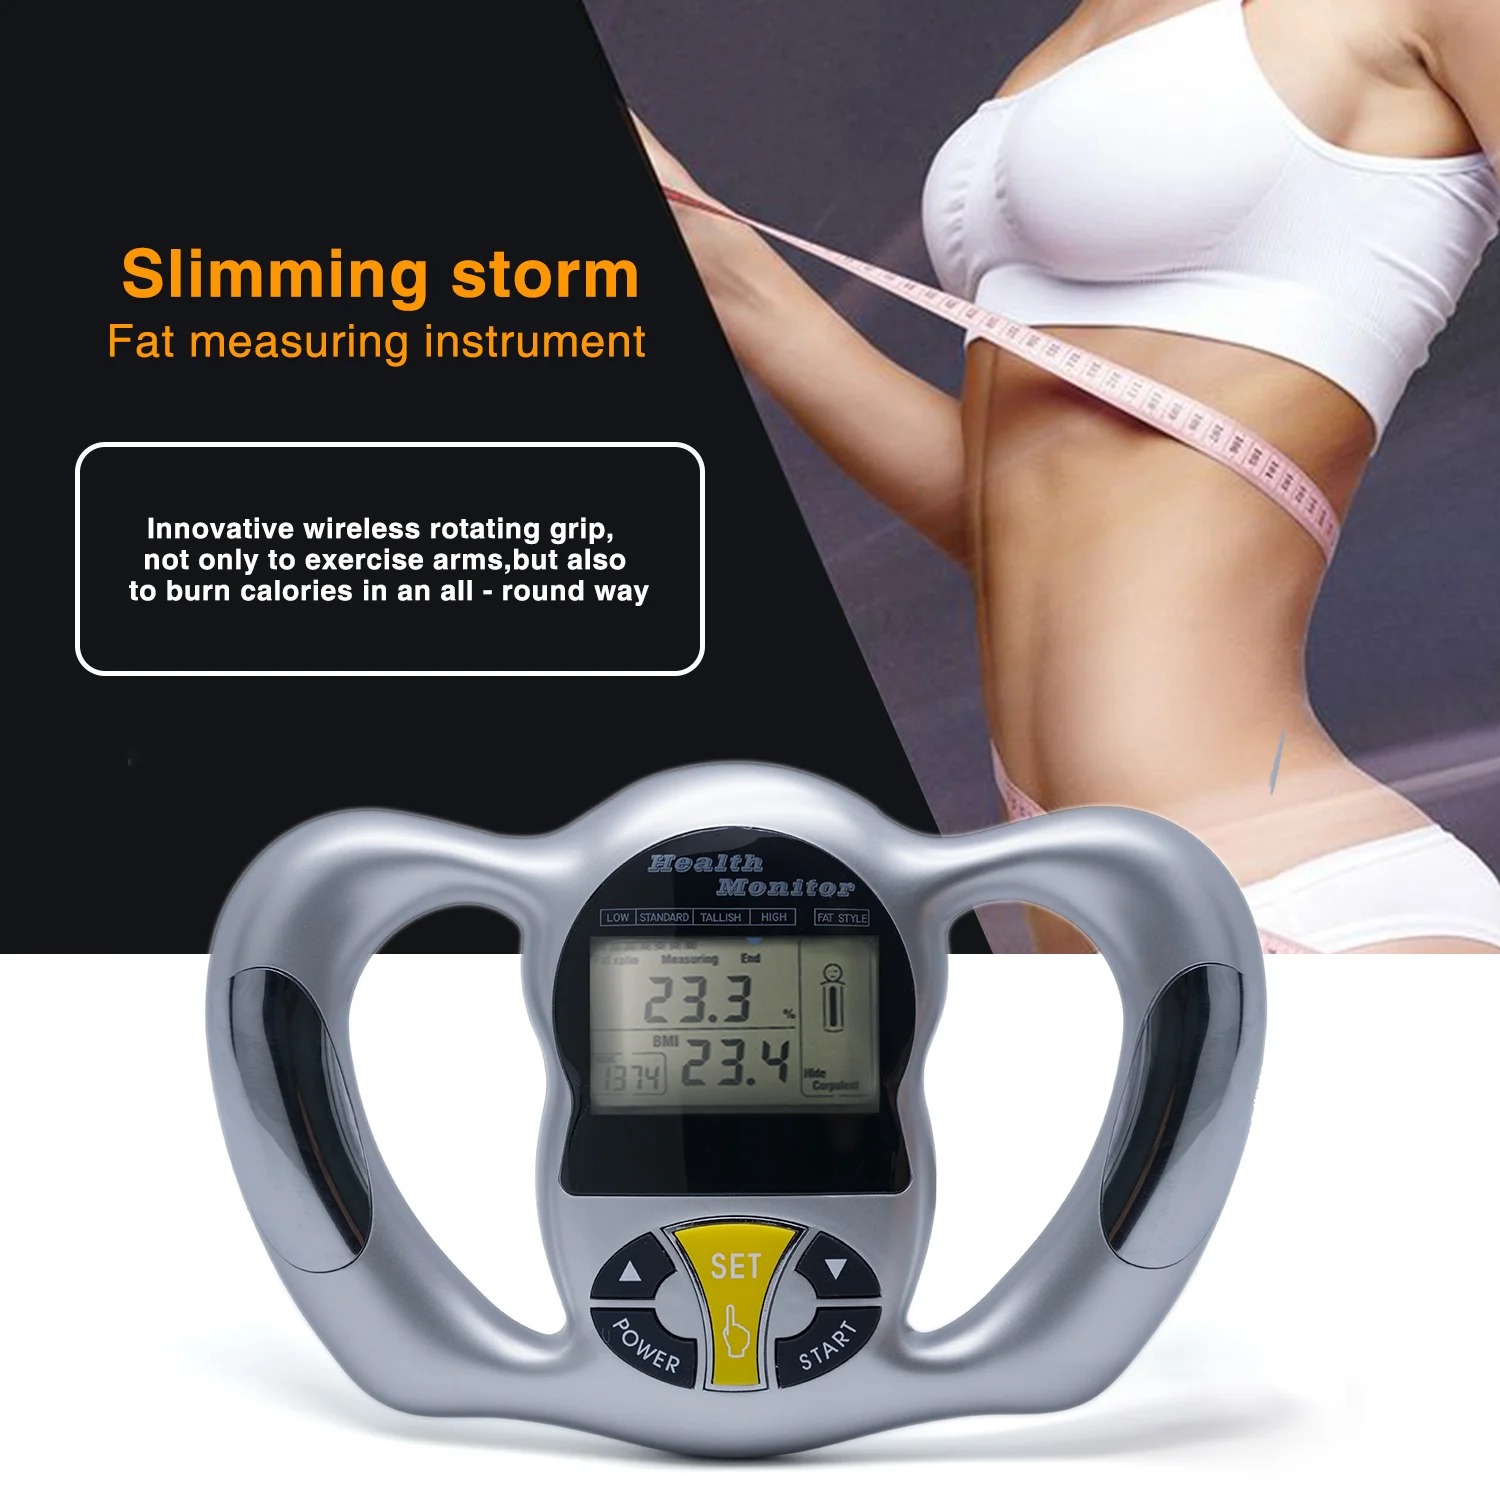 Sumifun беспроводной портативный цифровой ЖК-экран ручной тестер BMI тело жир мониторы забота о здоровье жир измерительный прибор C1418